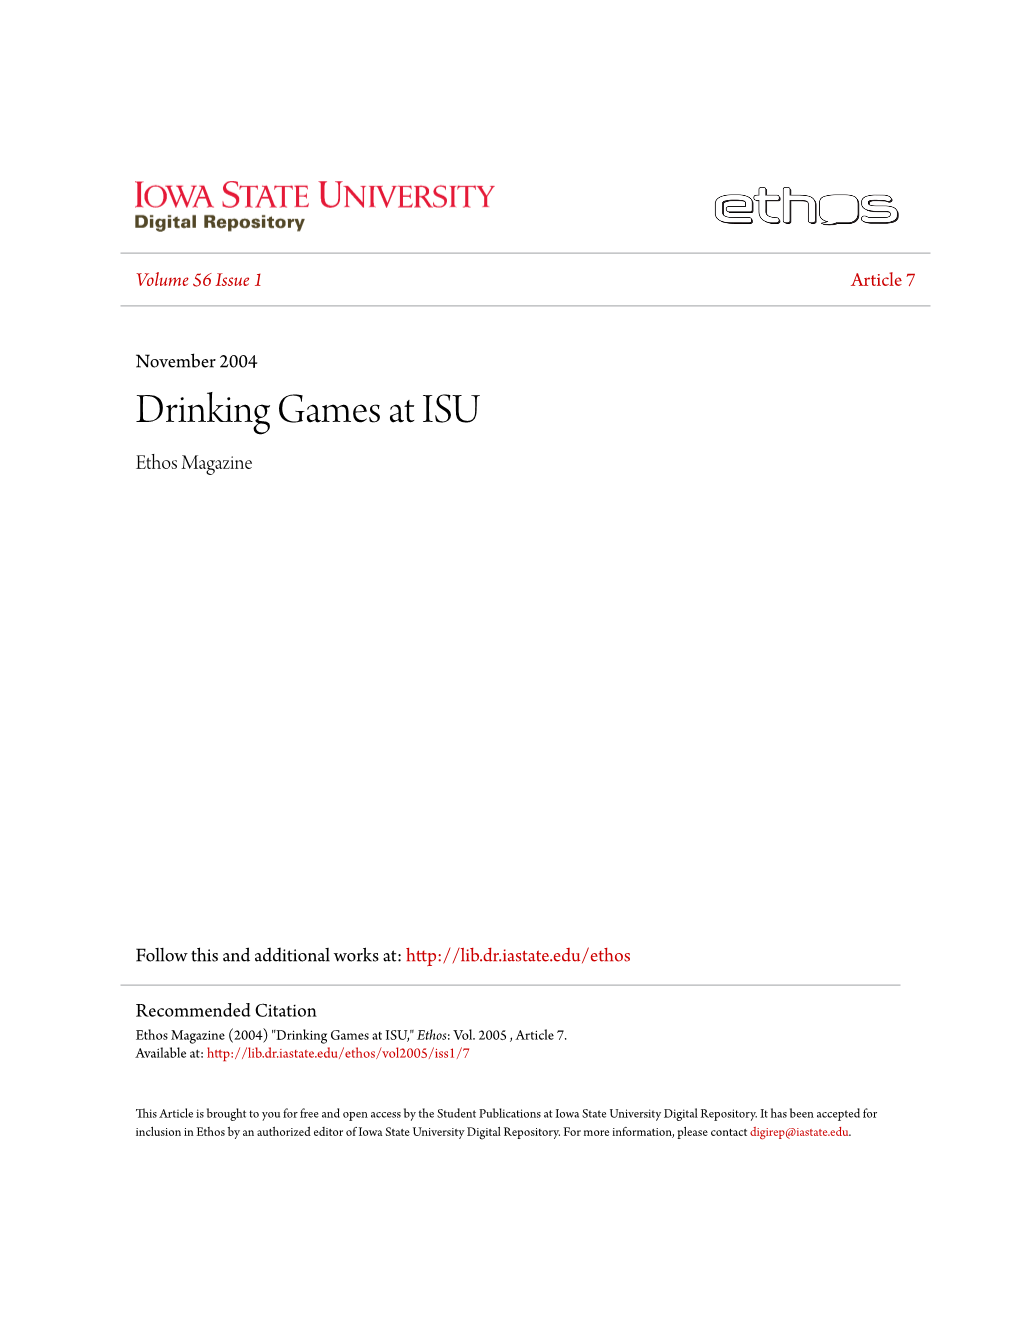 Drinking Games at ISU Ethos Magazine